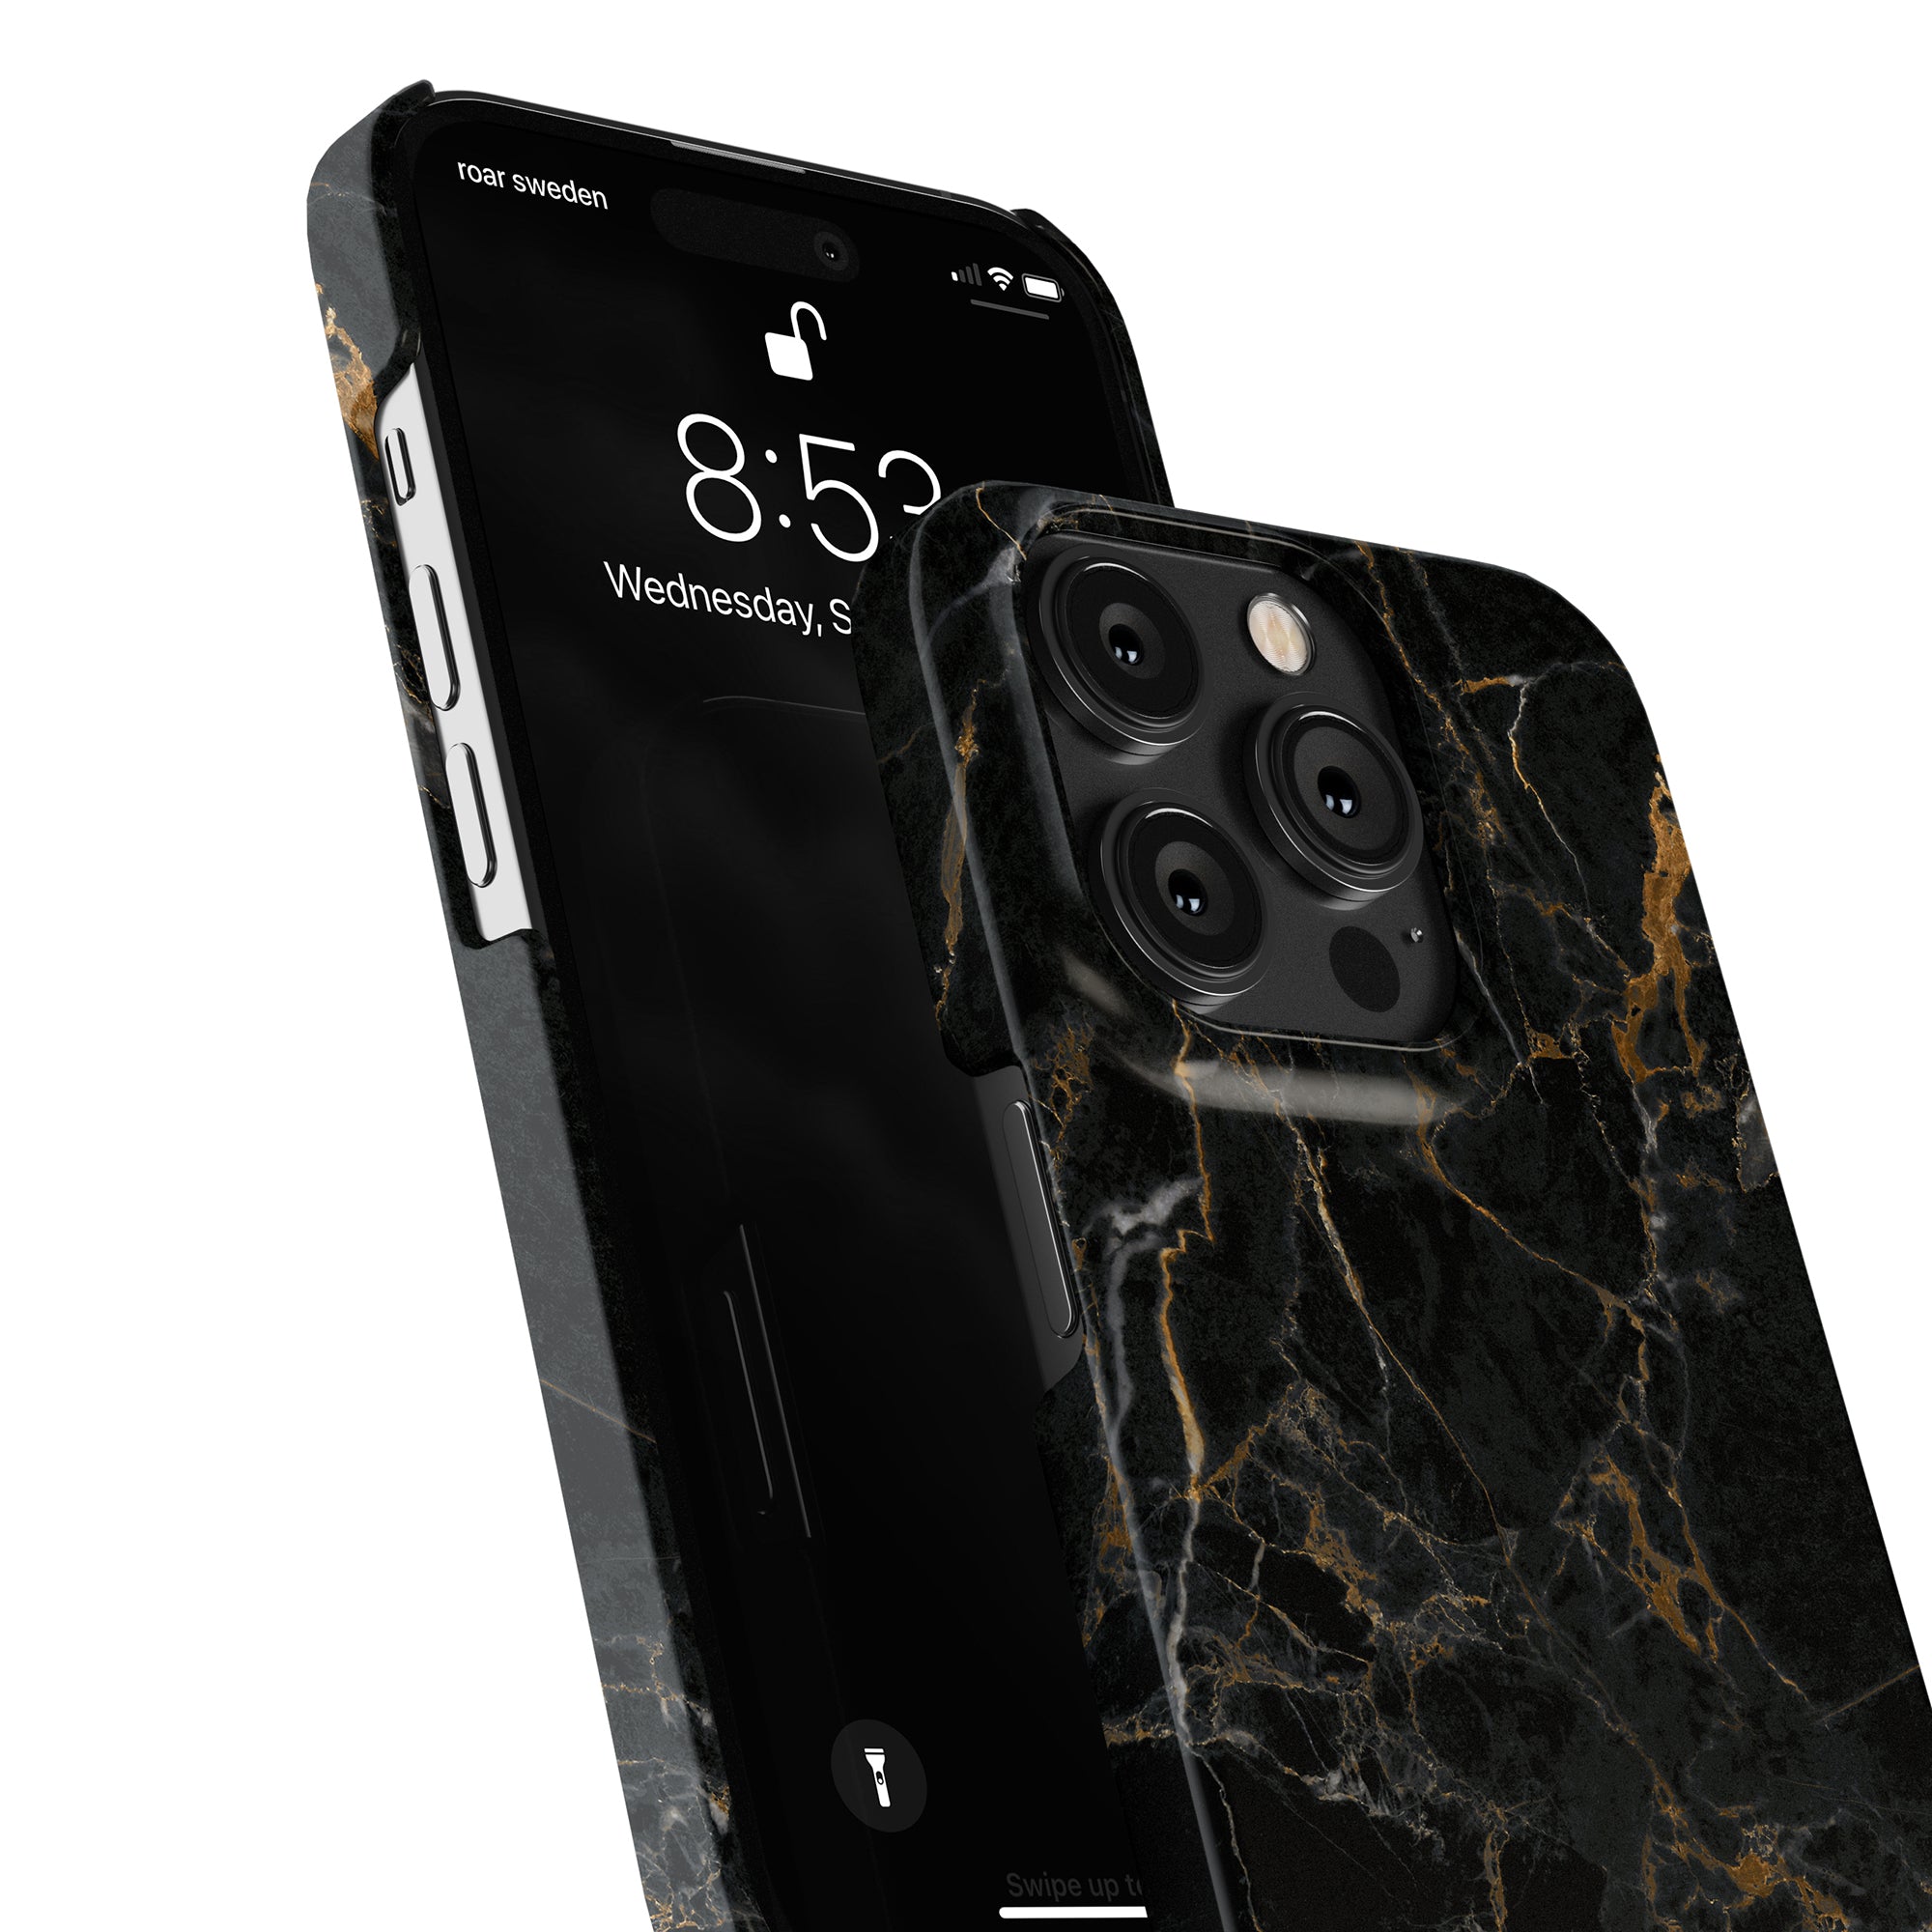 Ett elegant svart Portoro-fodral designat speciellt för iPhone 11 Pro, tillverkat av högkvalitativt marmormaterial. Snyggt men ändå skyddande, detta fodral erbjuder en slimmad profil och en perfekt passform för att förstärka